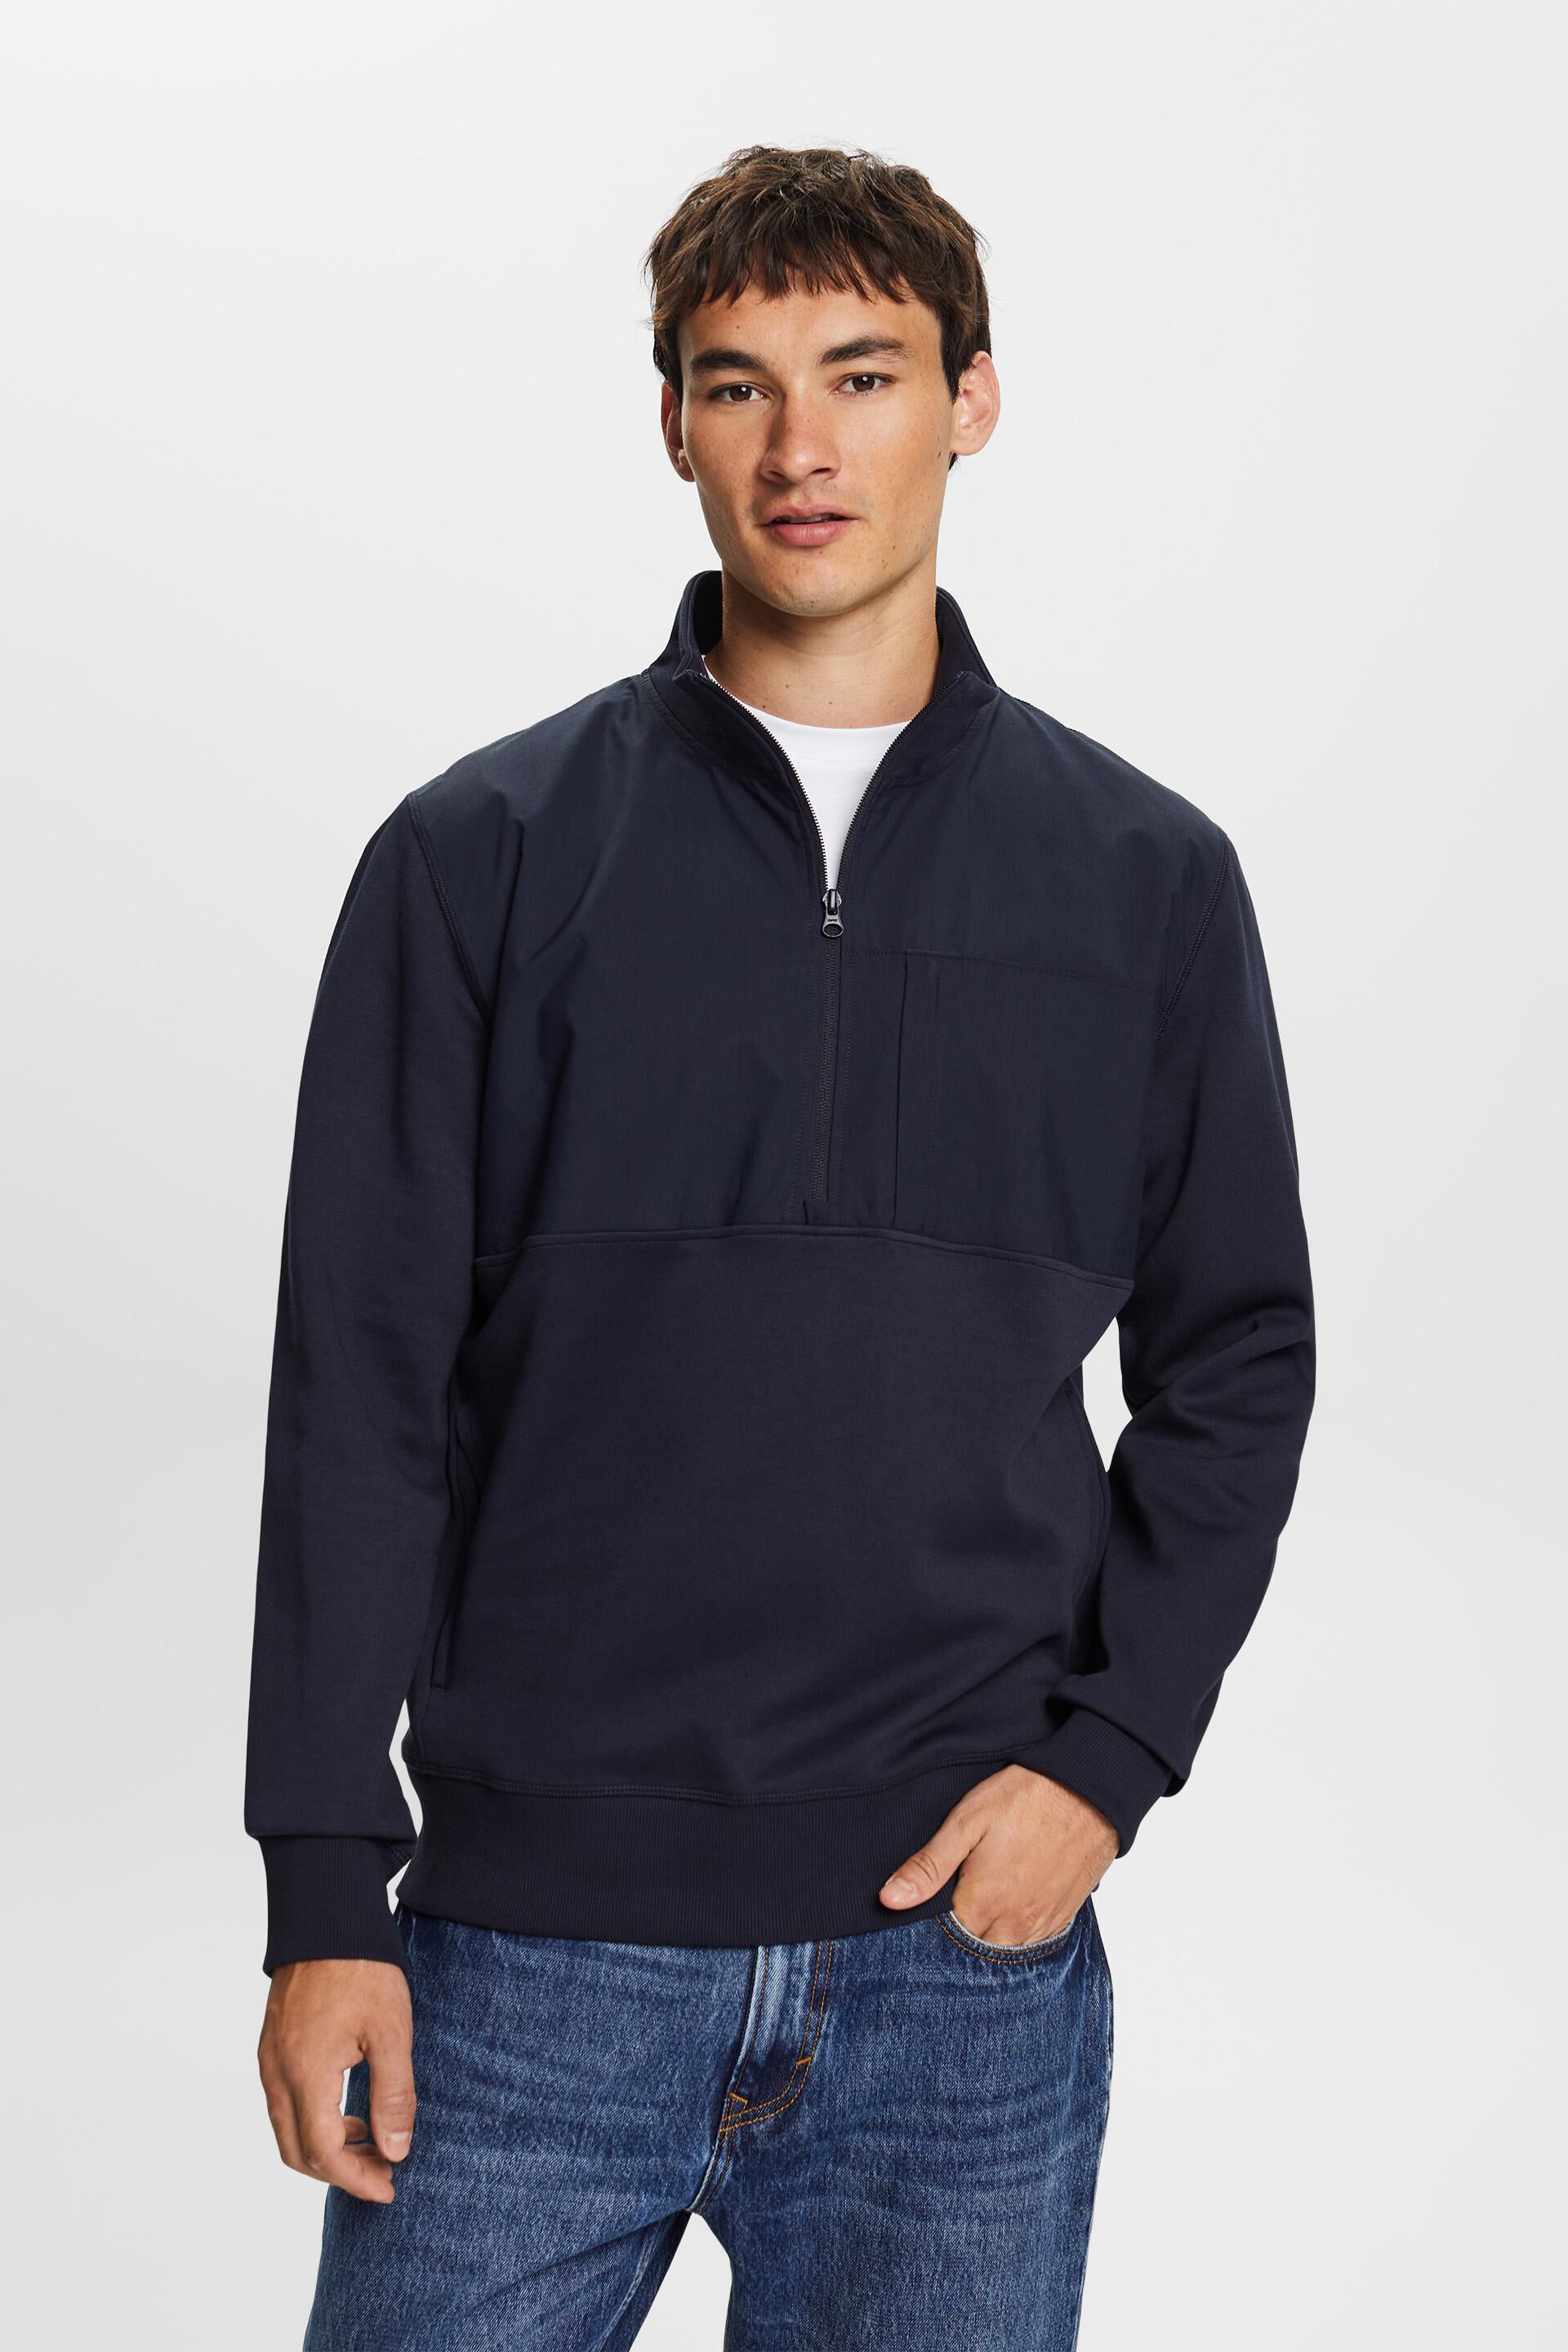 Esprit material Mixed half-zip sweatshirt